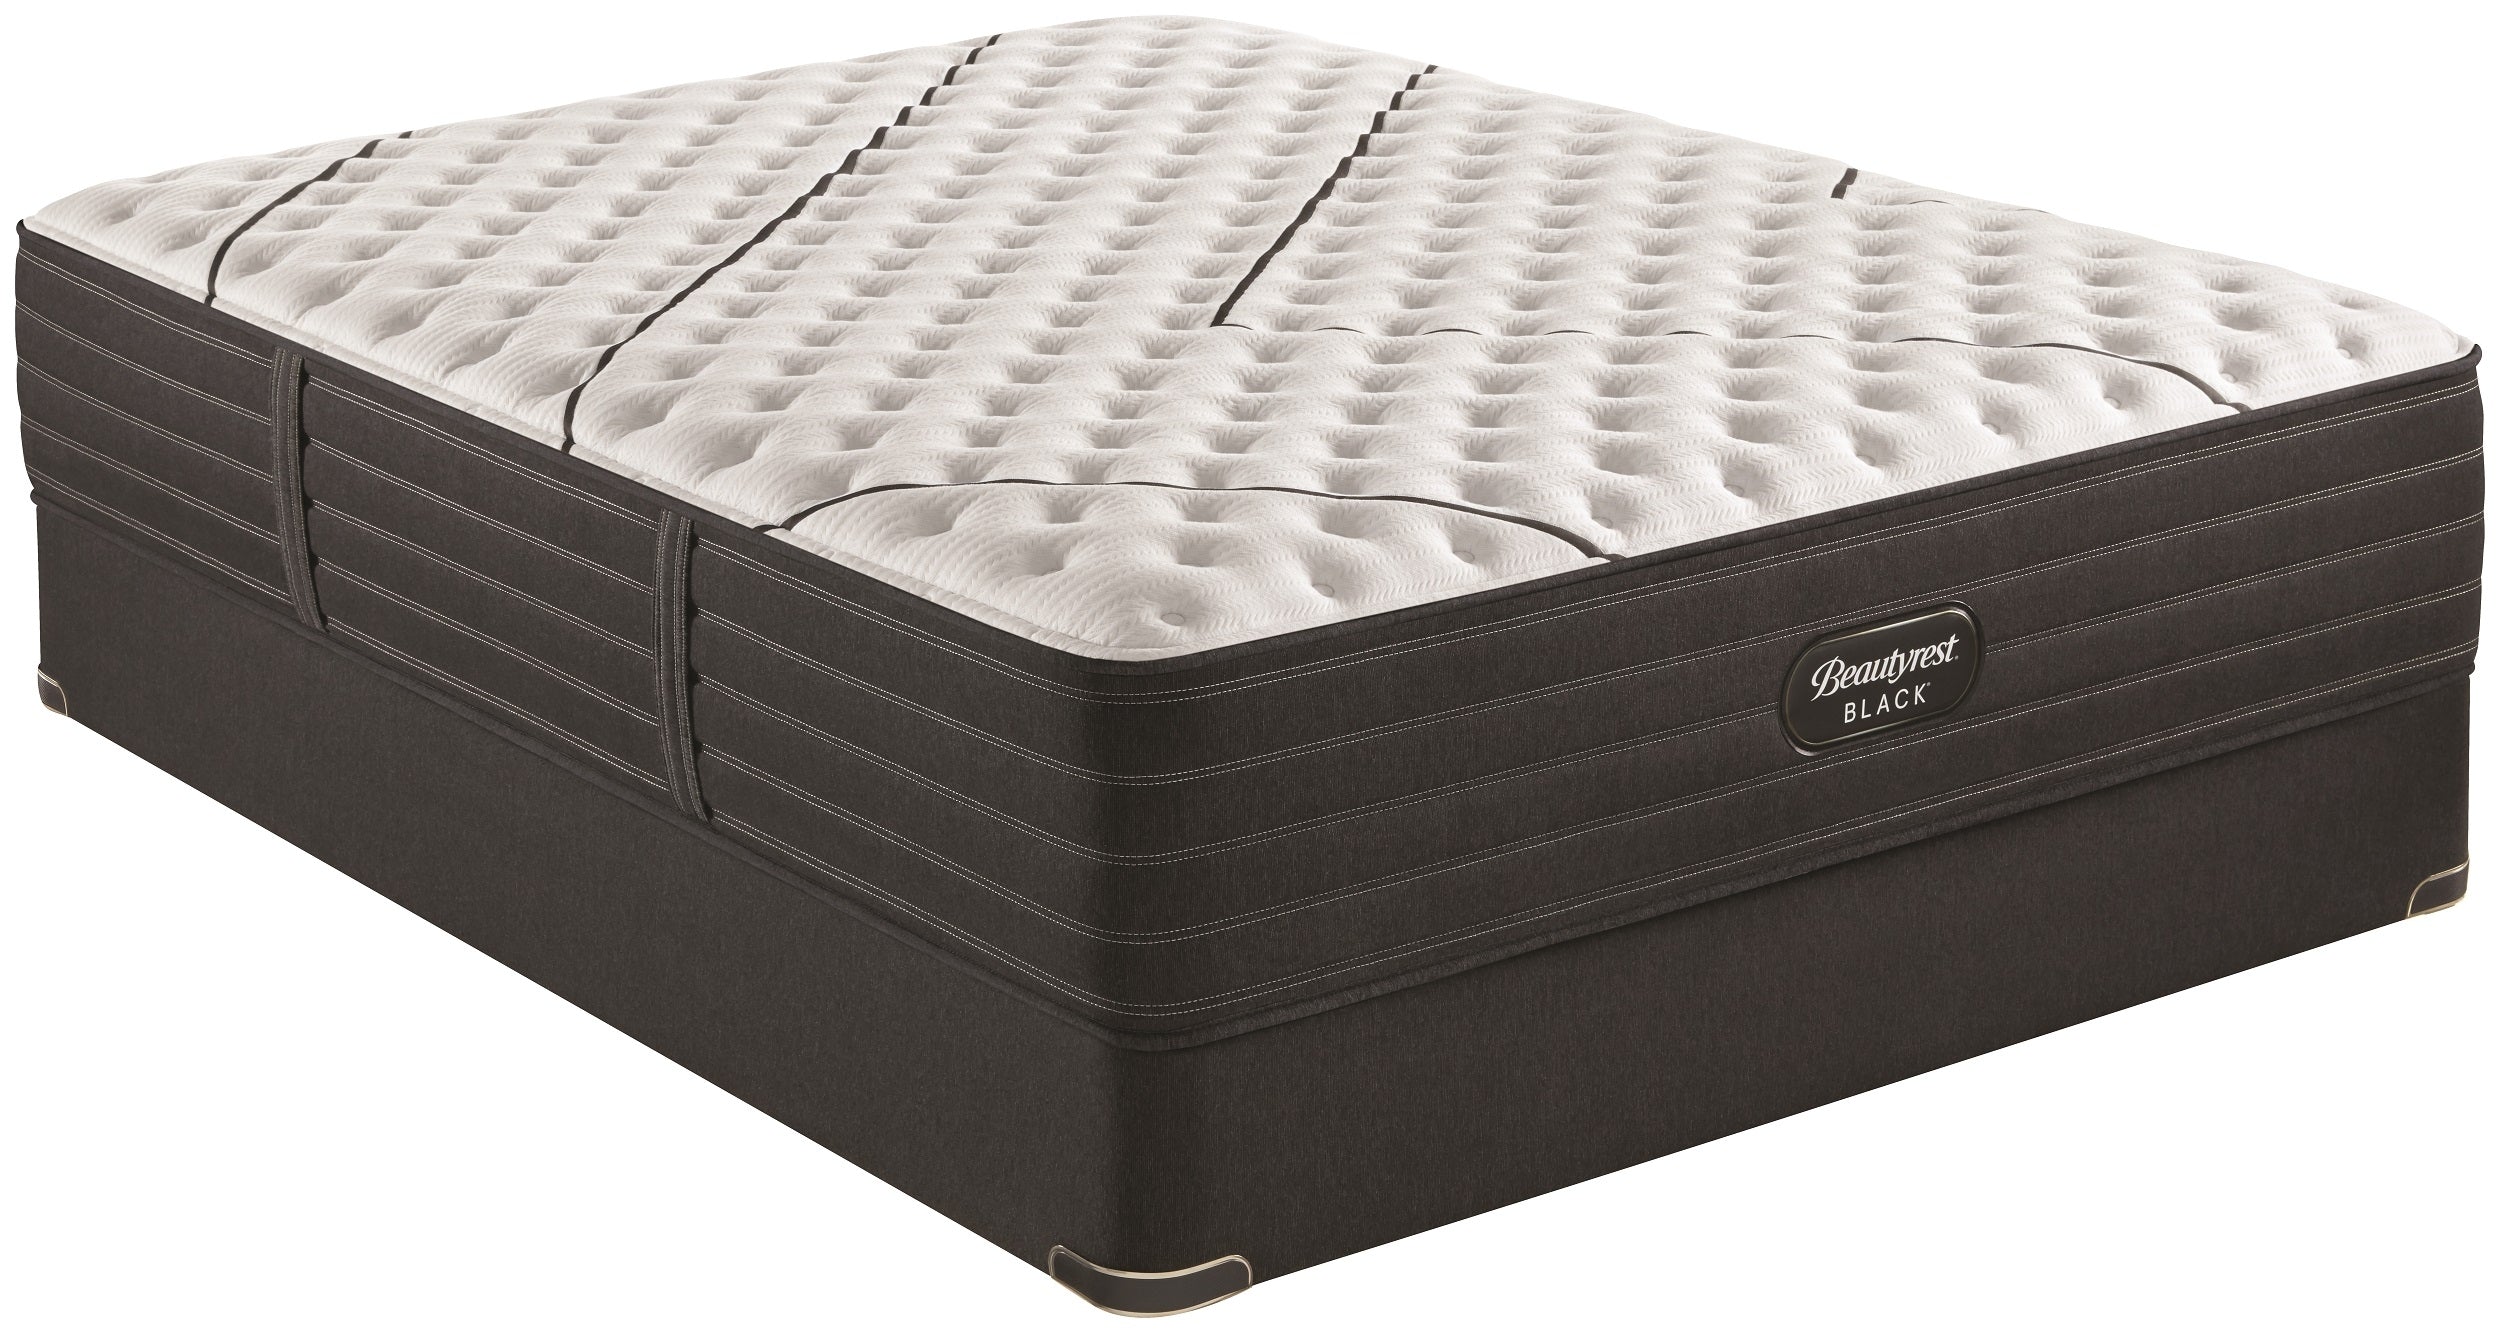 beautyrest black extra firm mattress review